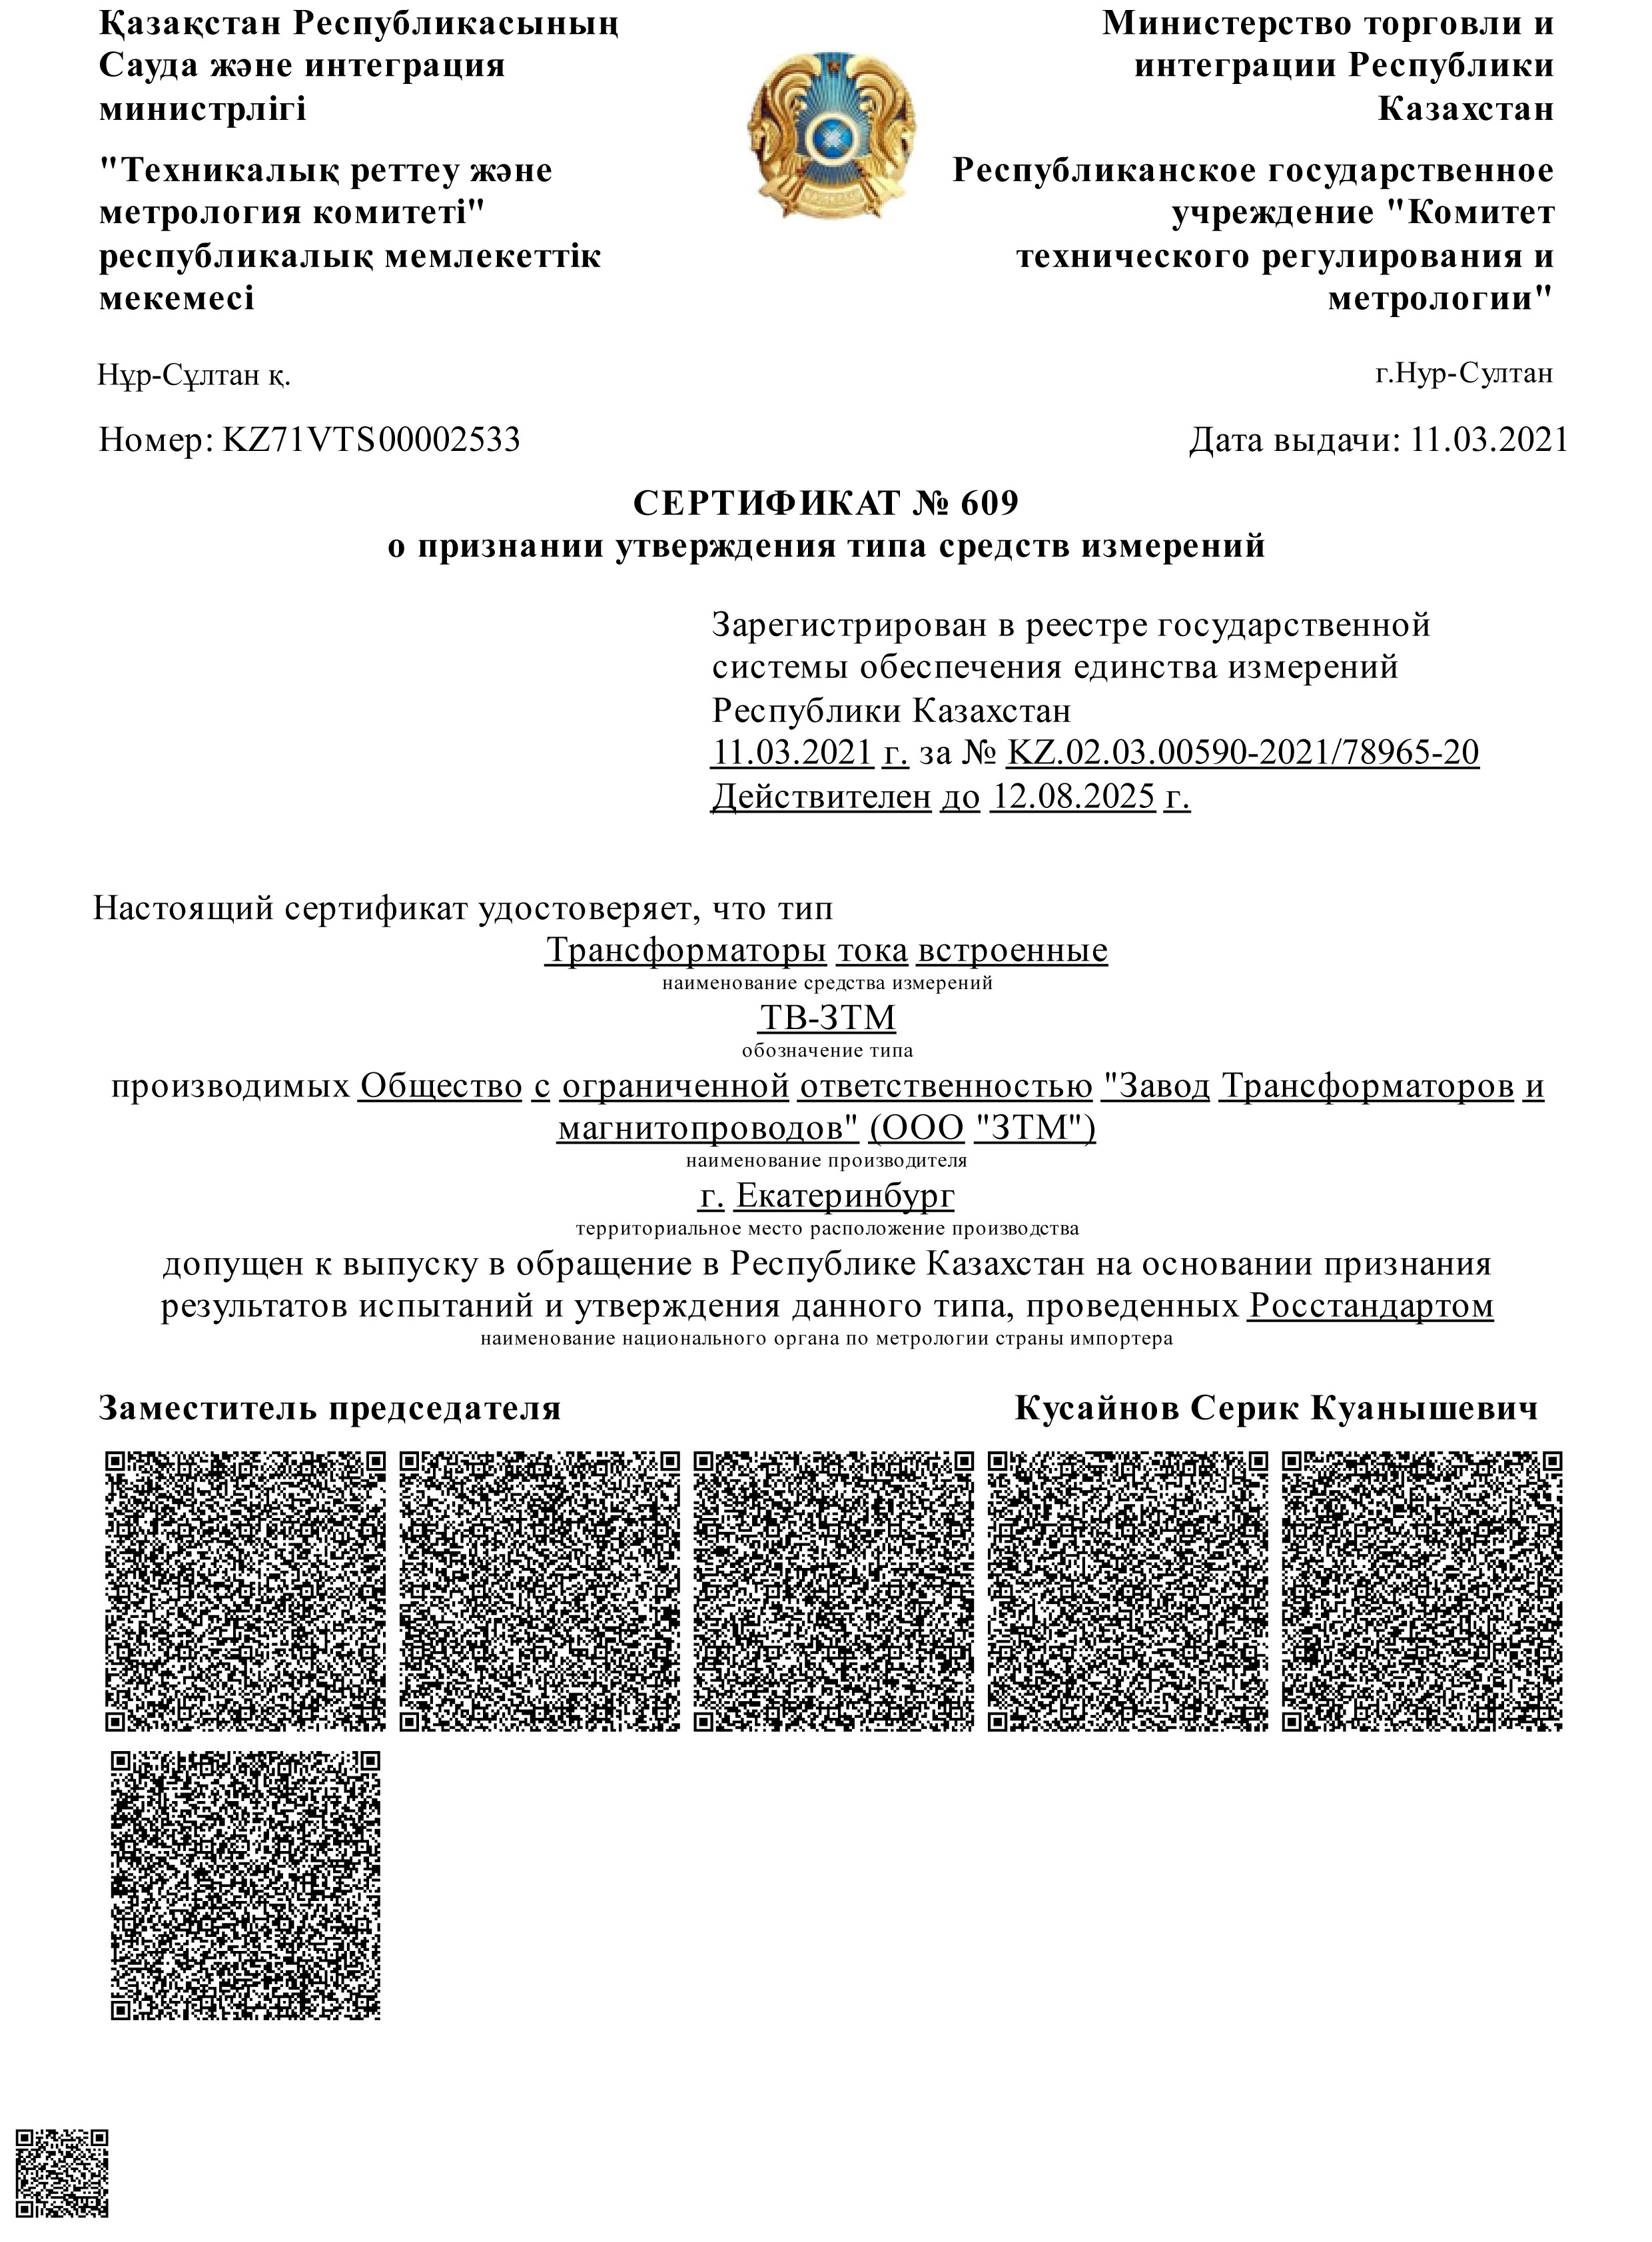 Сертификат об утверждении типа для Казахстана